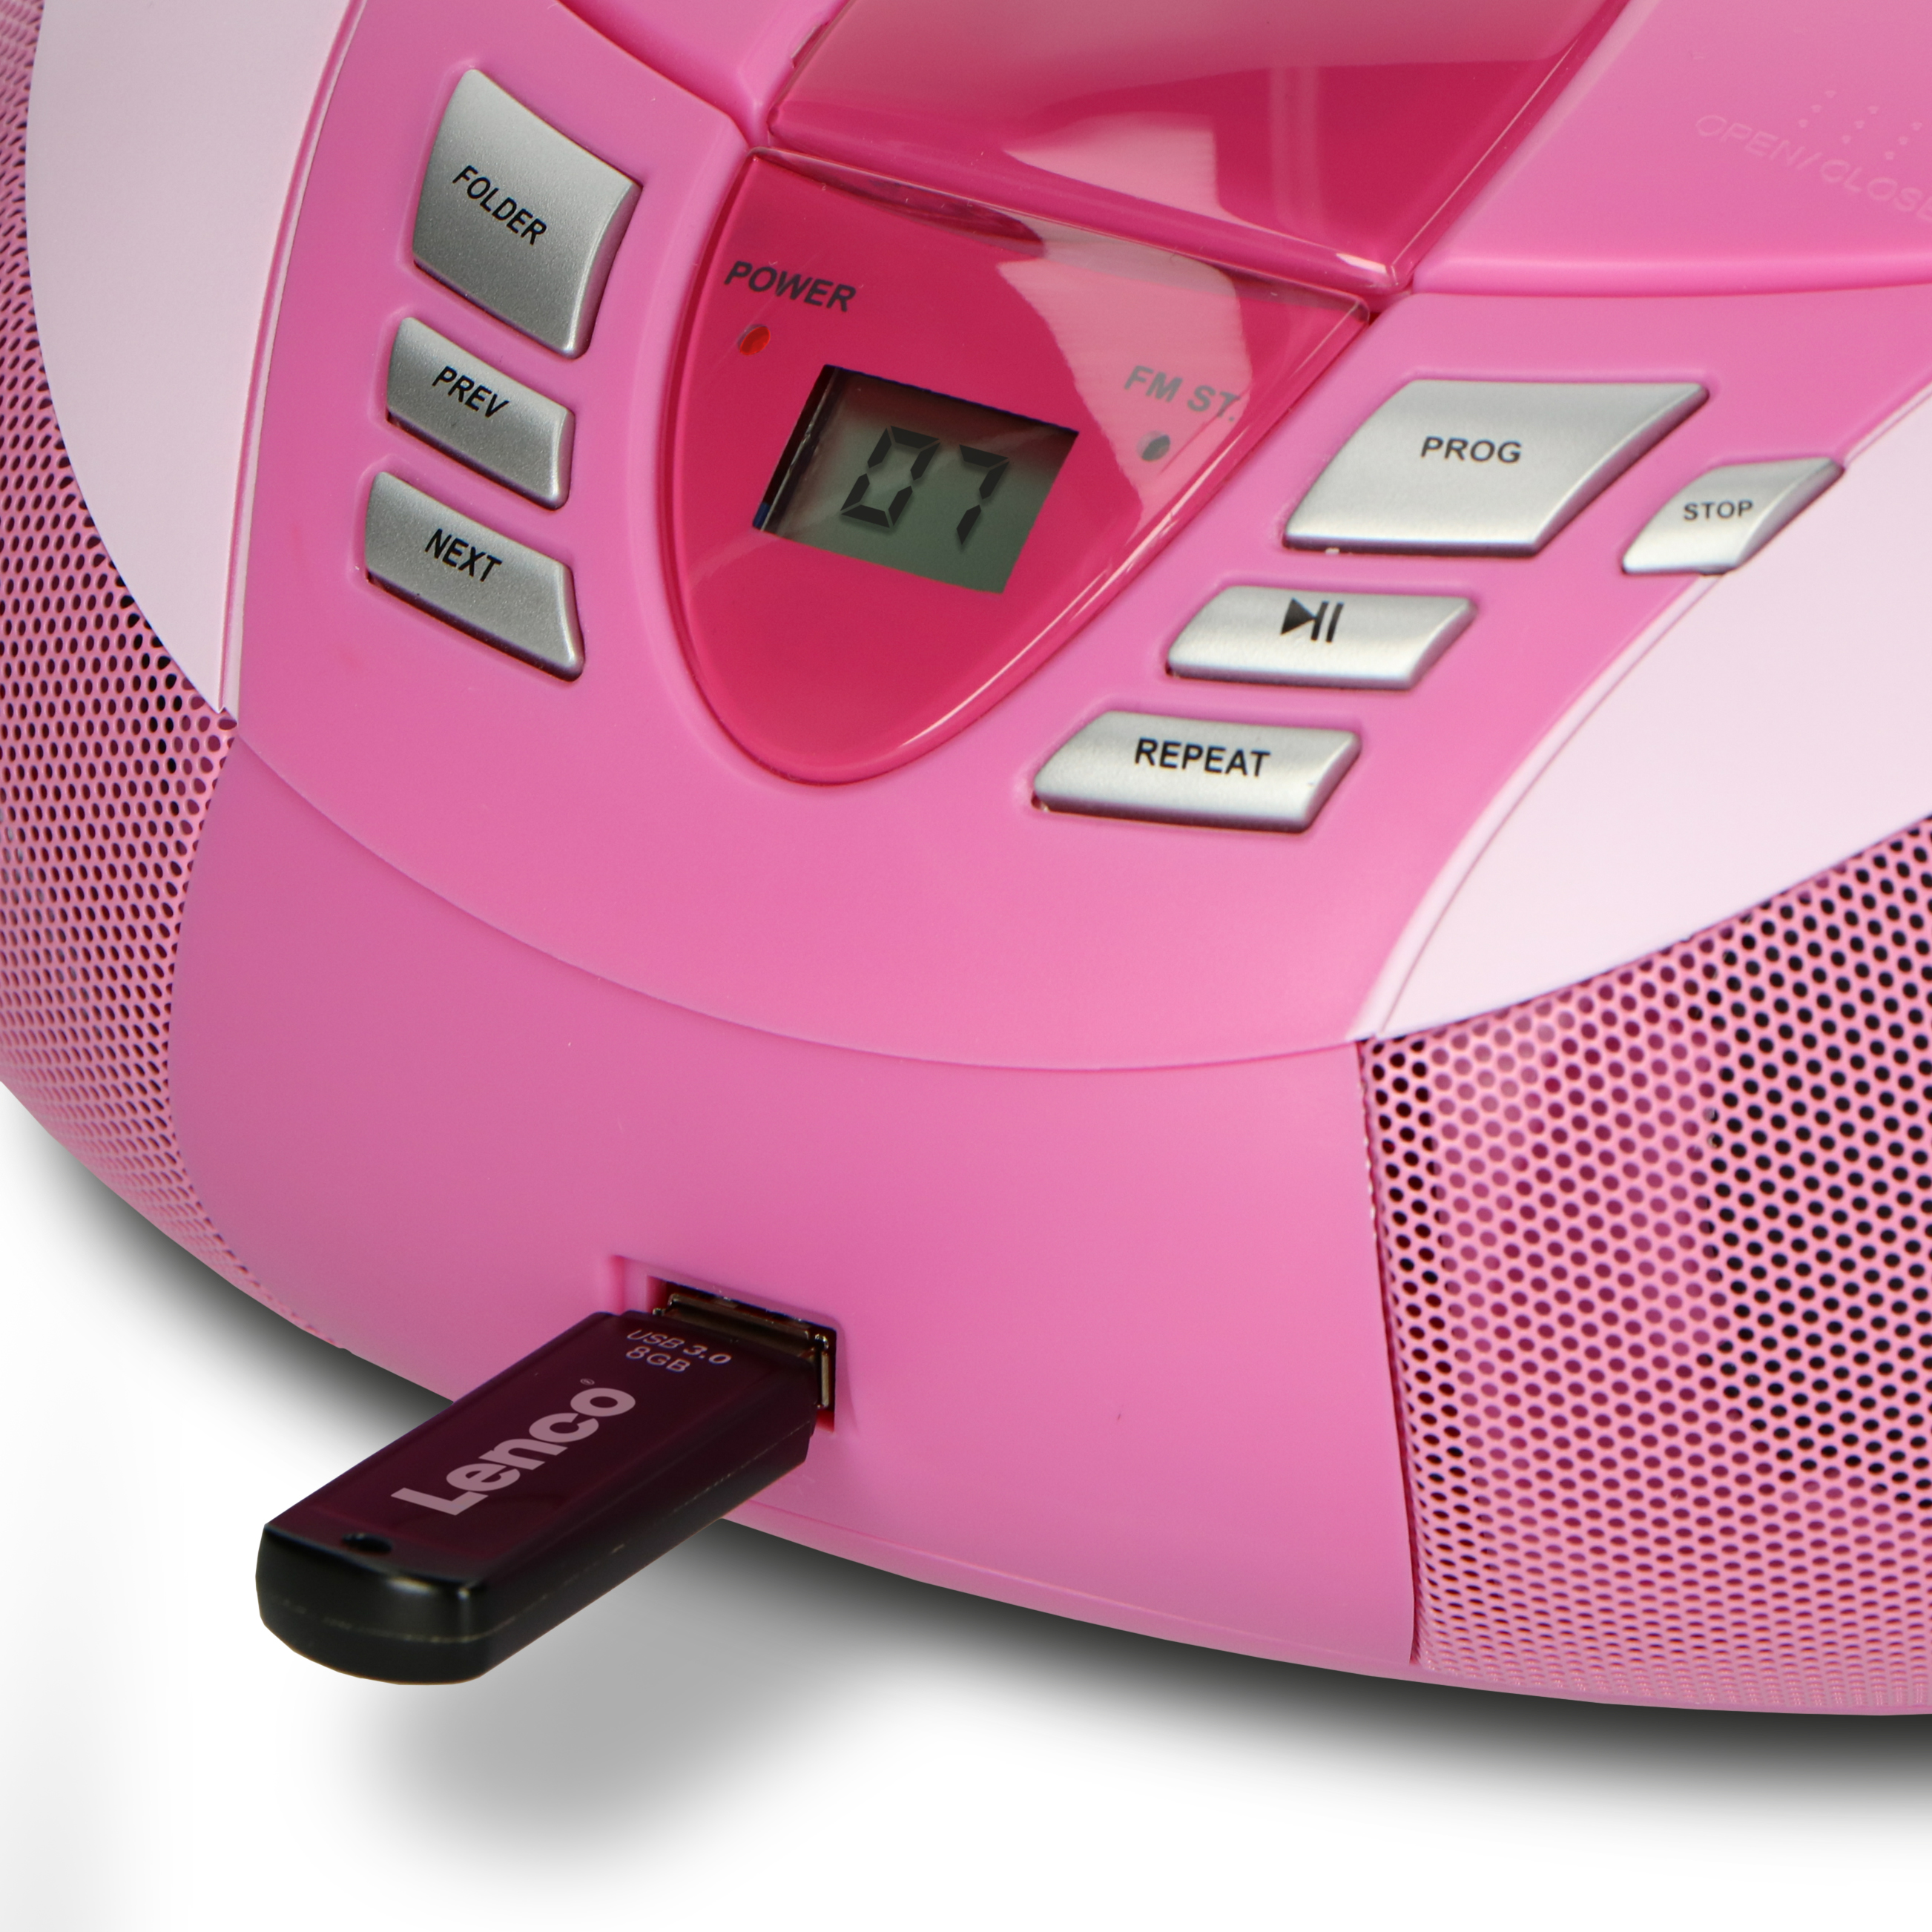 LENCO SCD-37 Rosa Radiorecorder, Pink